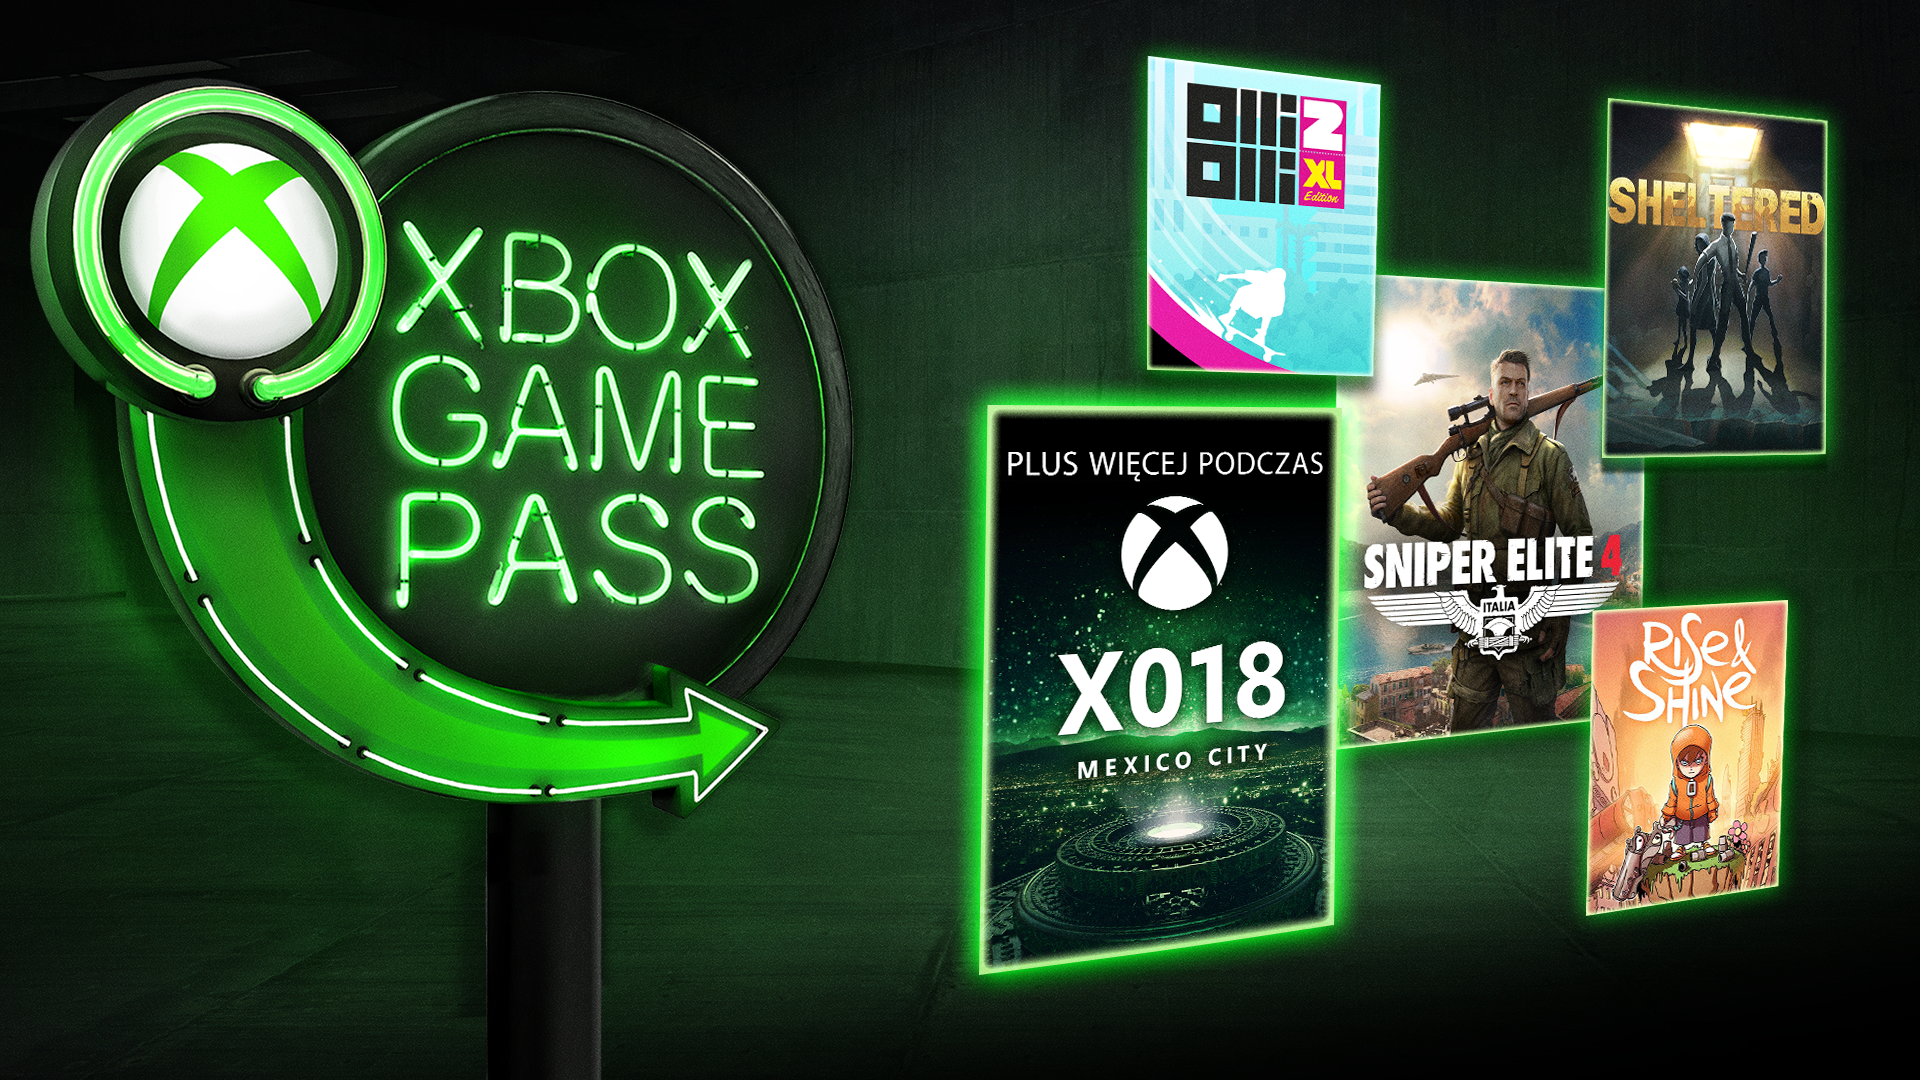 Xbox game Pass. Карта для активации Xbox game Pass. Карта USA для Xbox game Pass. Карта США для активации Xbox game Pass. Лучшее в game pass